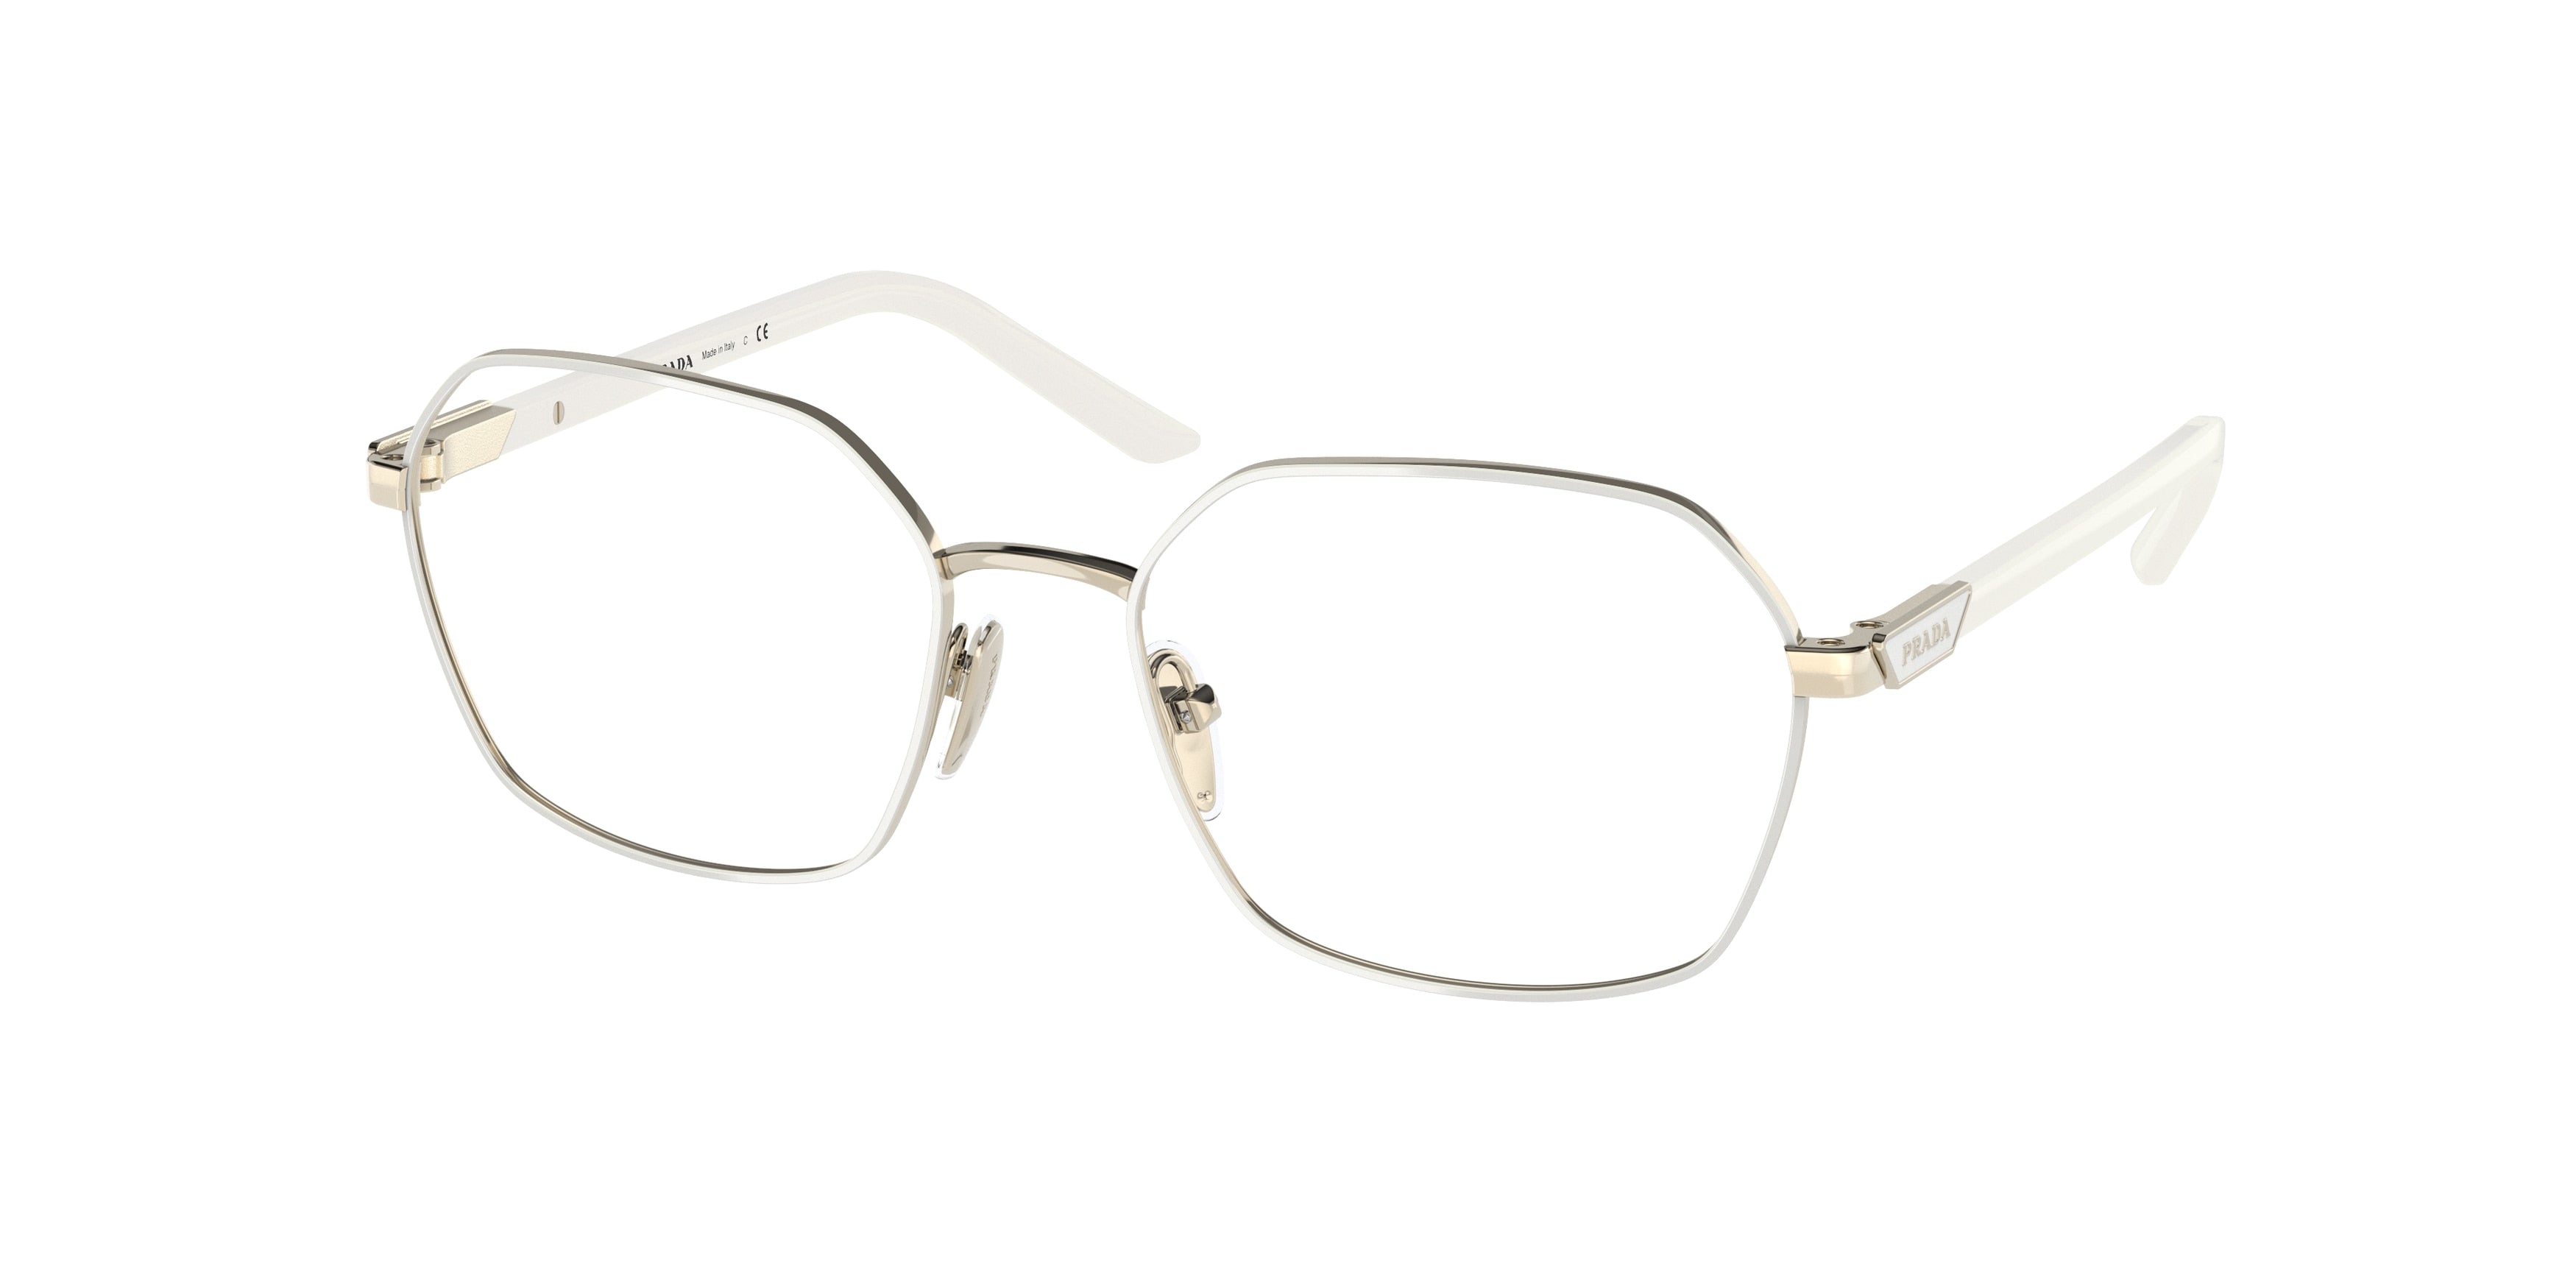 Prada PR55YV Square Eyeglasses  LFB1O1-Talc/Pale Gold 52-135-17 - Color Map White